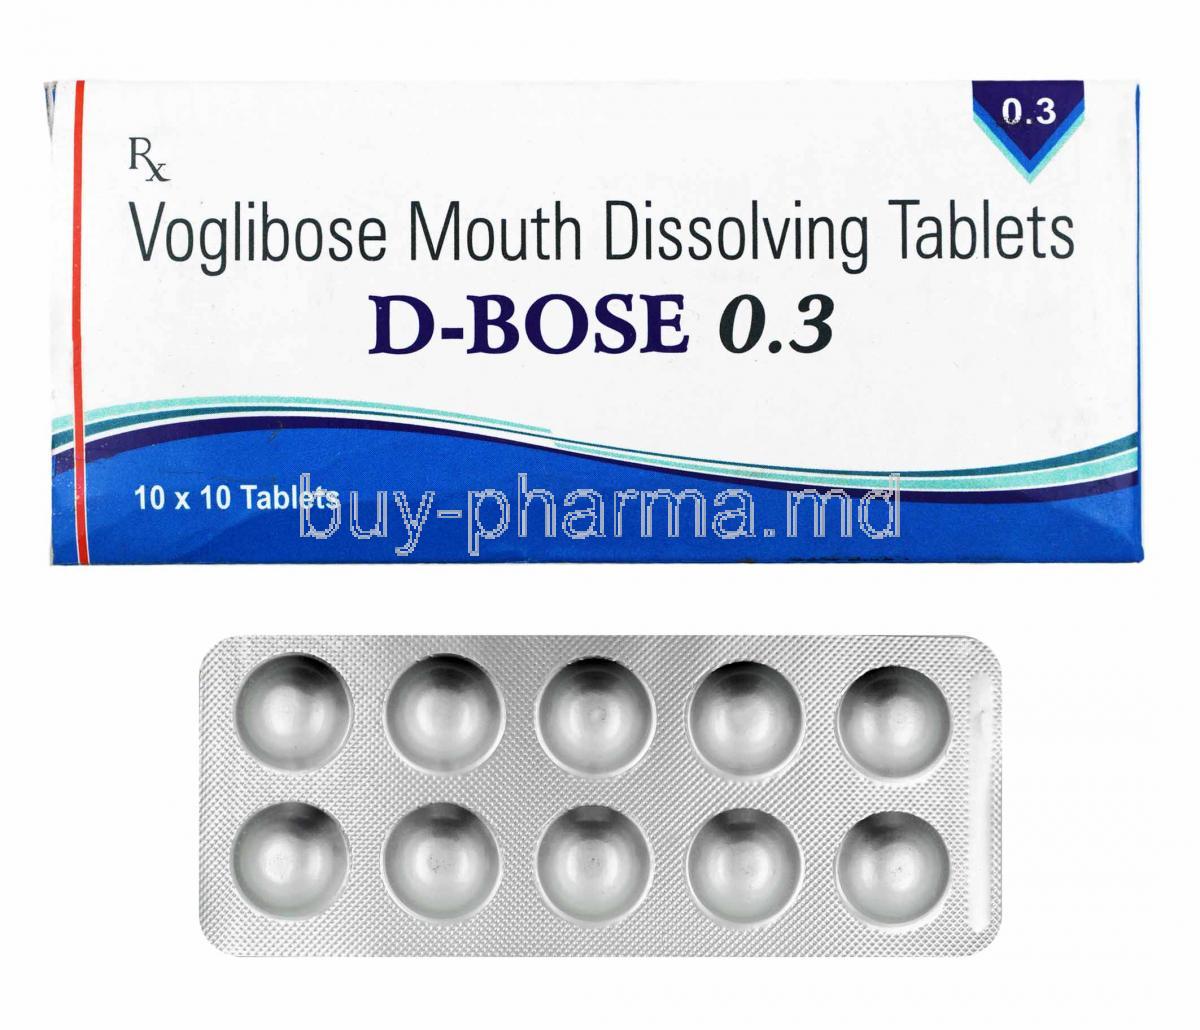 D-Bose, Voglibose 0.3mg box and tablets